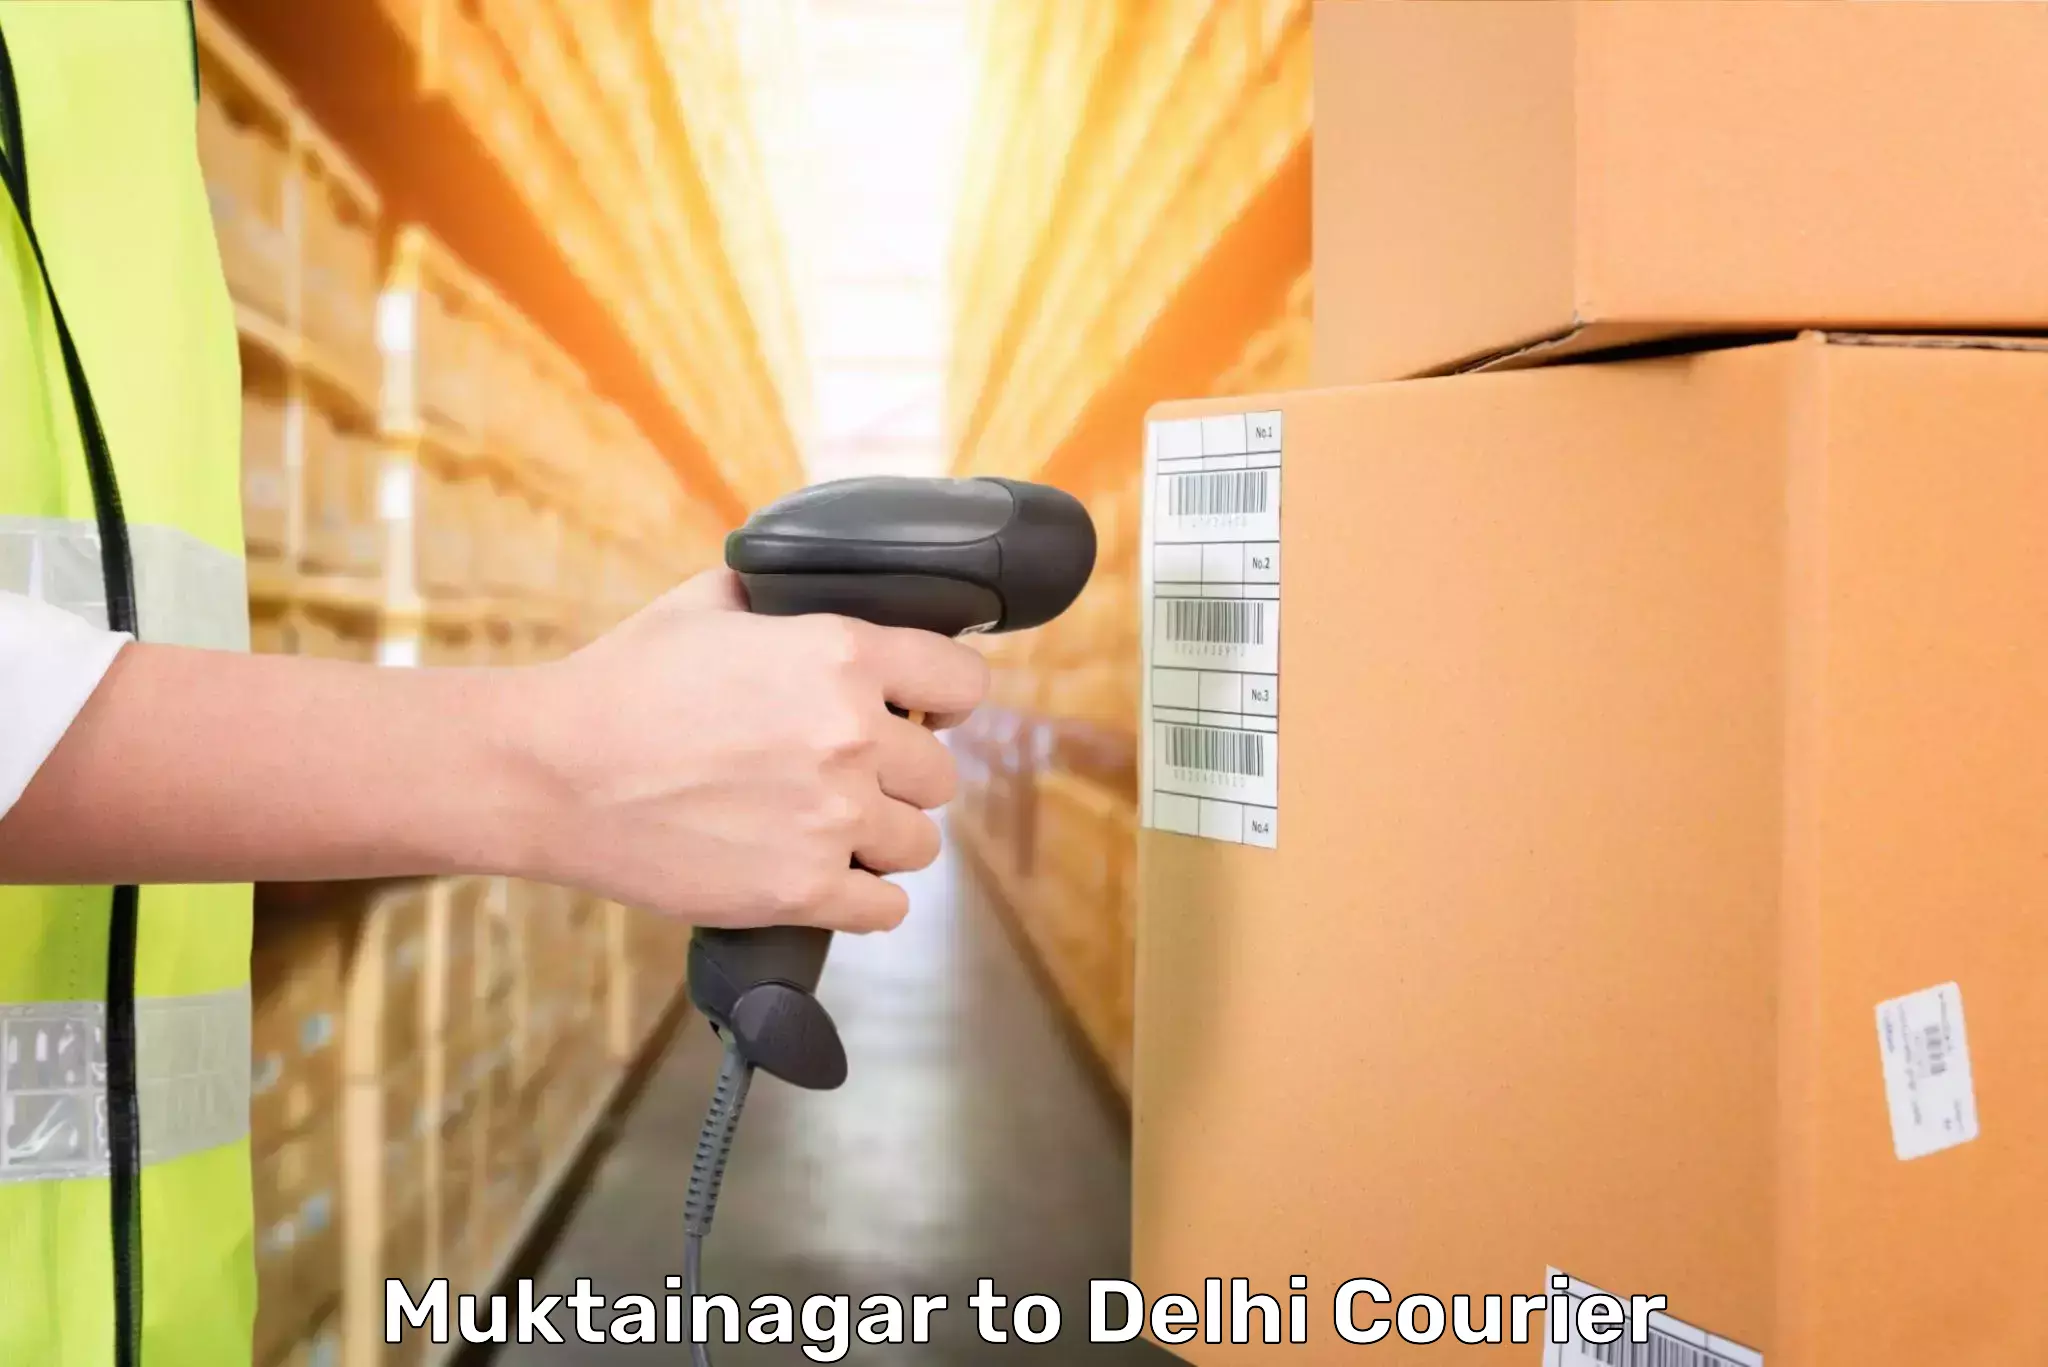 Personal effects shipping in Muktainagar to Kalkaji